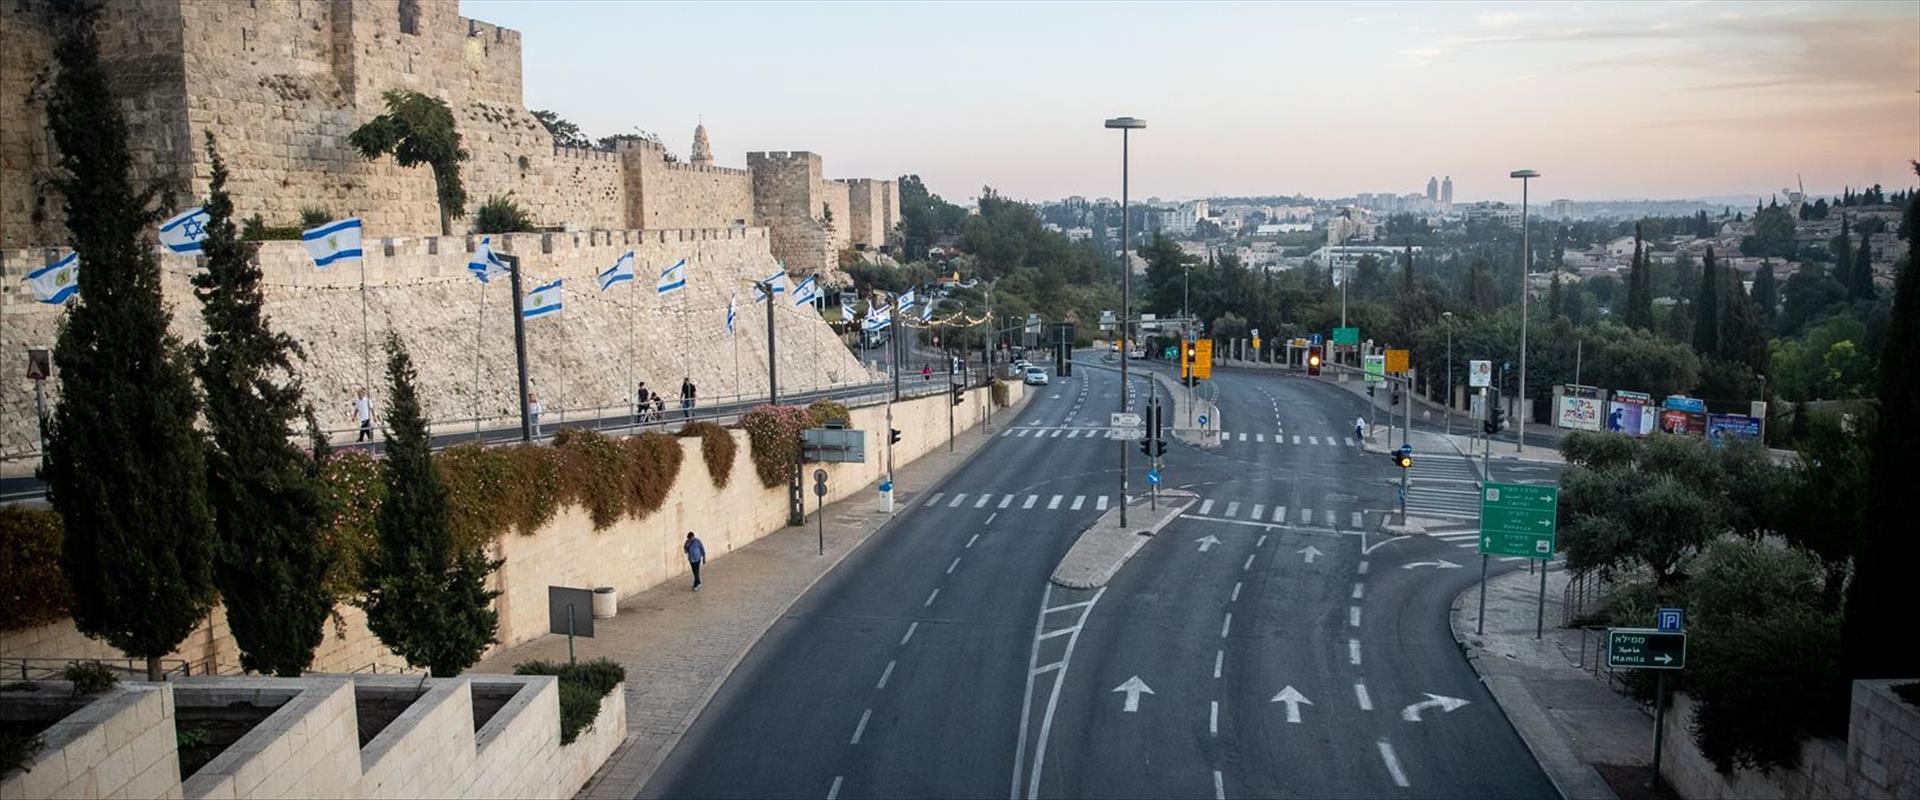 بلدية القدس تخصص 46 مليون شيكل للشوارع بشرقي المدينة | موقع سوا 